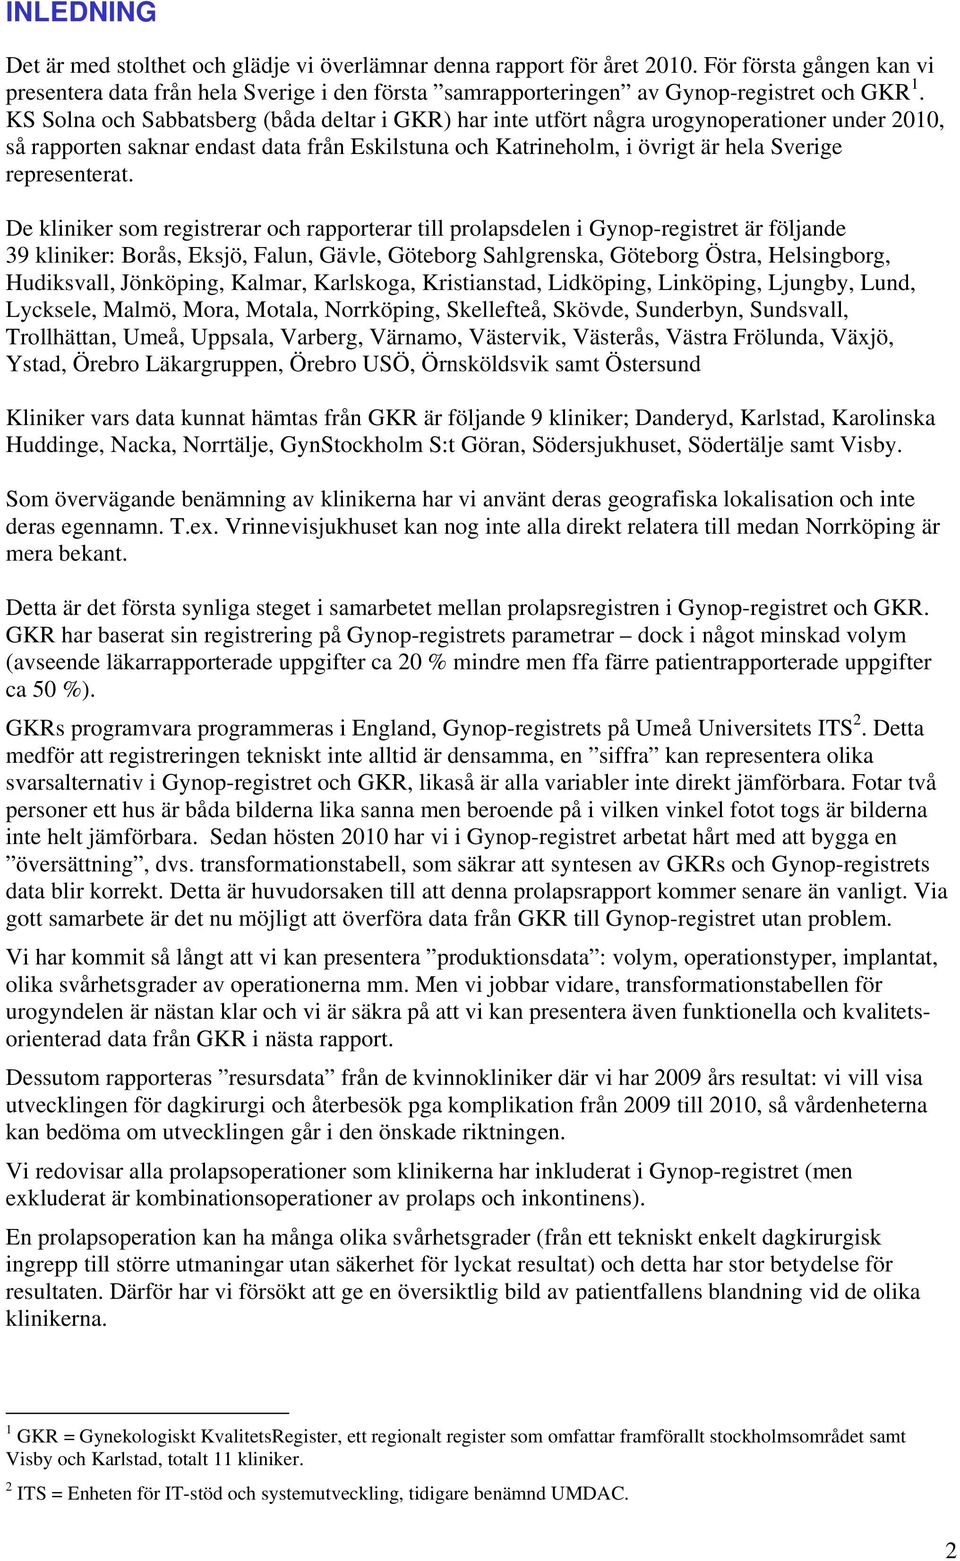 De kliniker som registrerar och rapporterar till prolapsdelen i Gynop-registret är följande 39 kliniker: Borås, Eksjö, Falun, Gävle, Göteborg Sahlgrenska, Göteborg Östra, Helsingborg, Hudiksvall,